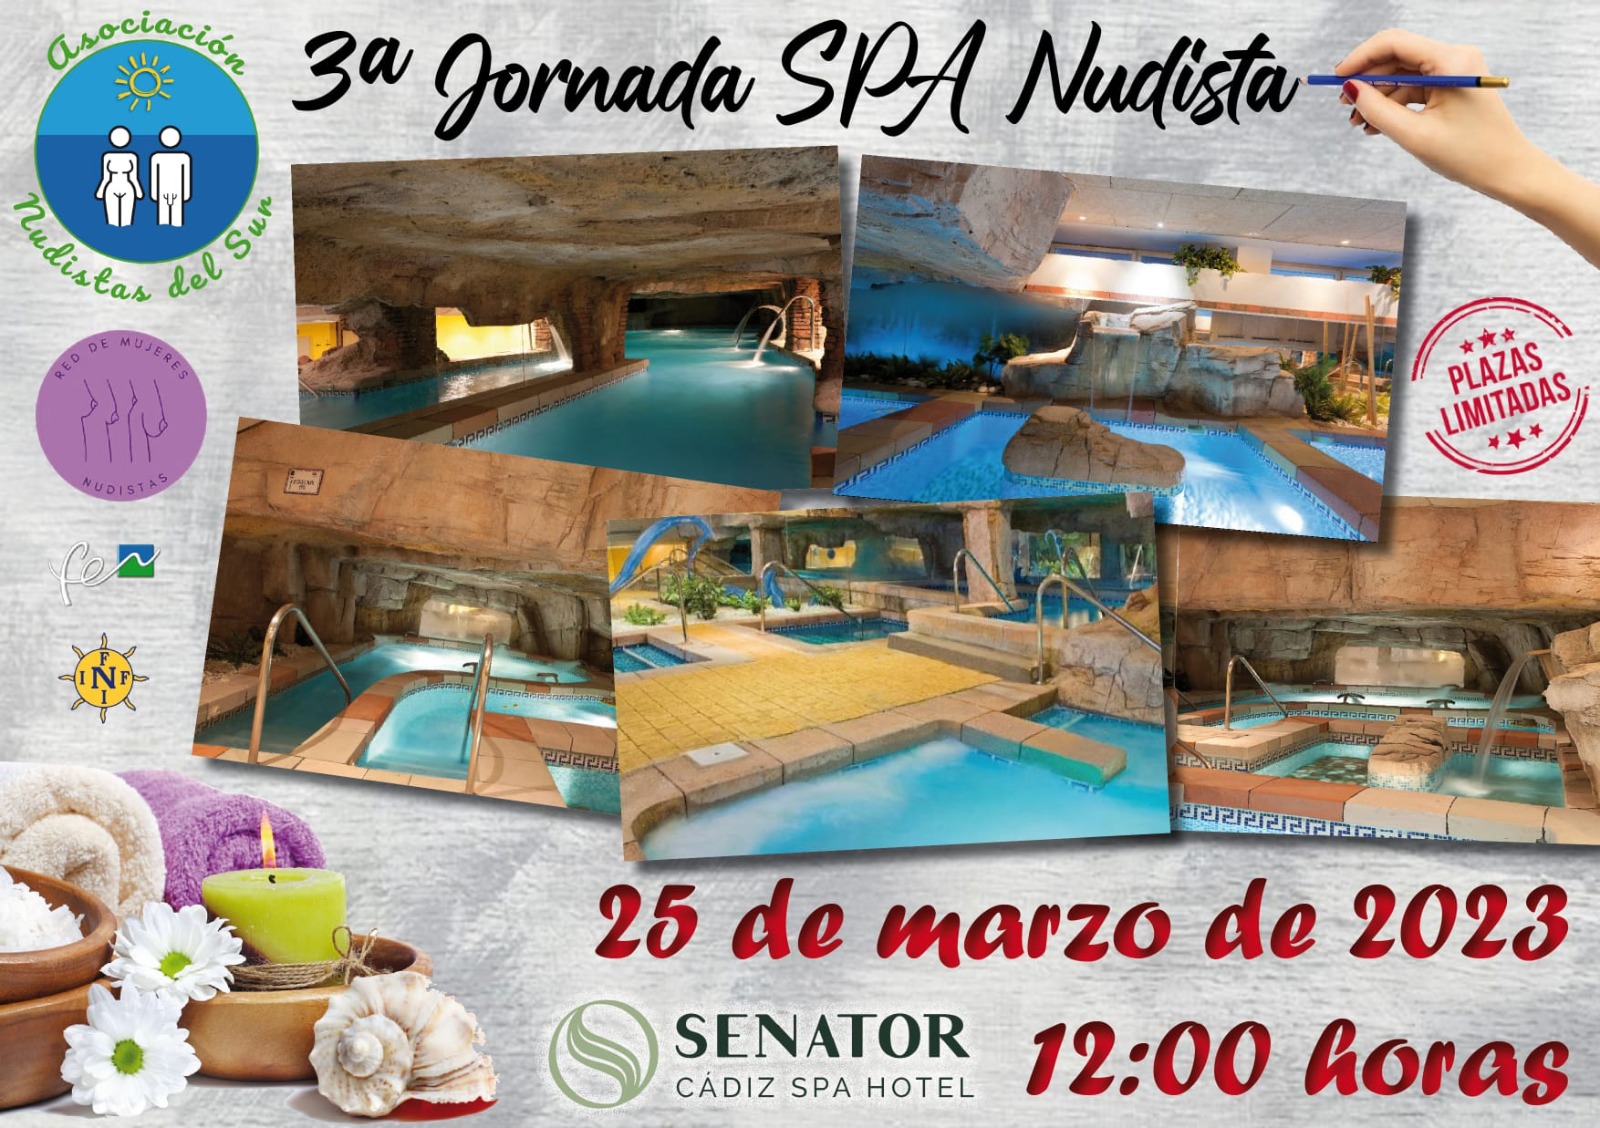 Sesión nudista en el Spa del Hotel Senator de Cádiz con DxN. Sábado 25 de marzo de 2023.